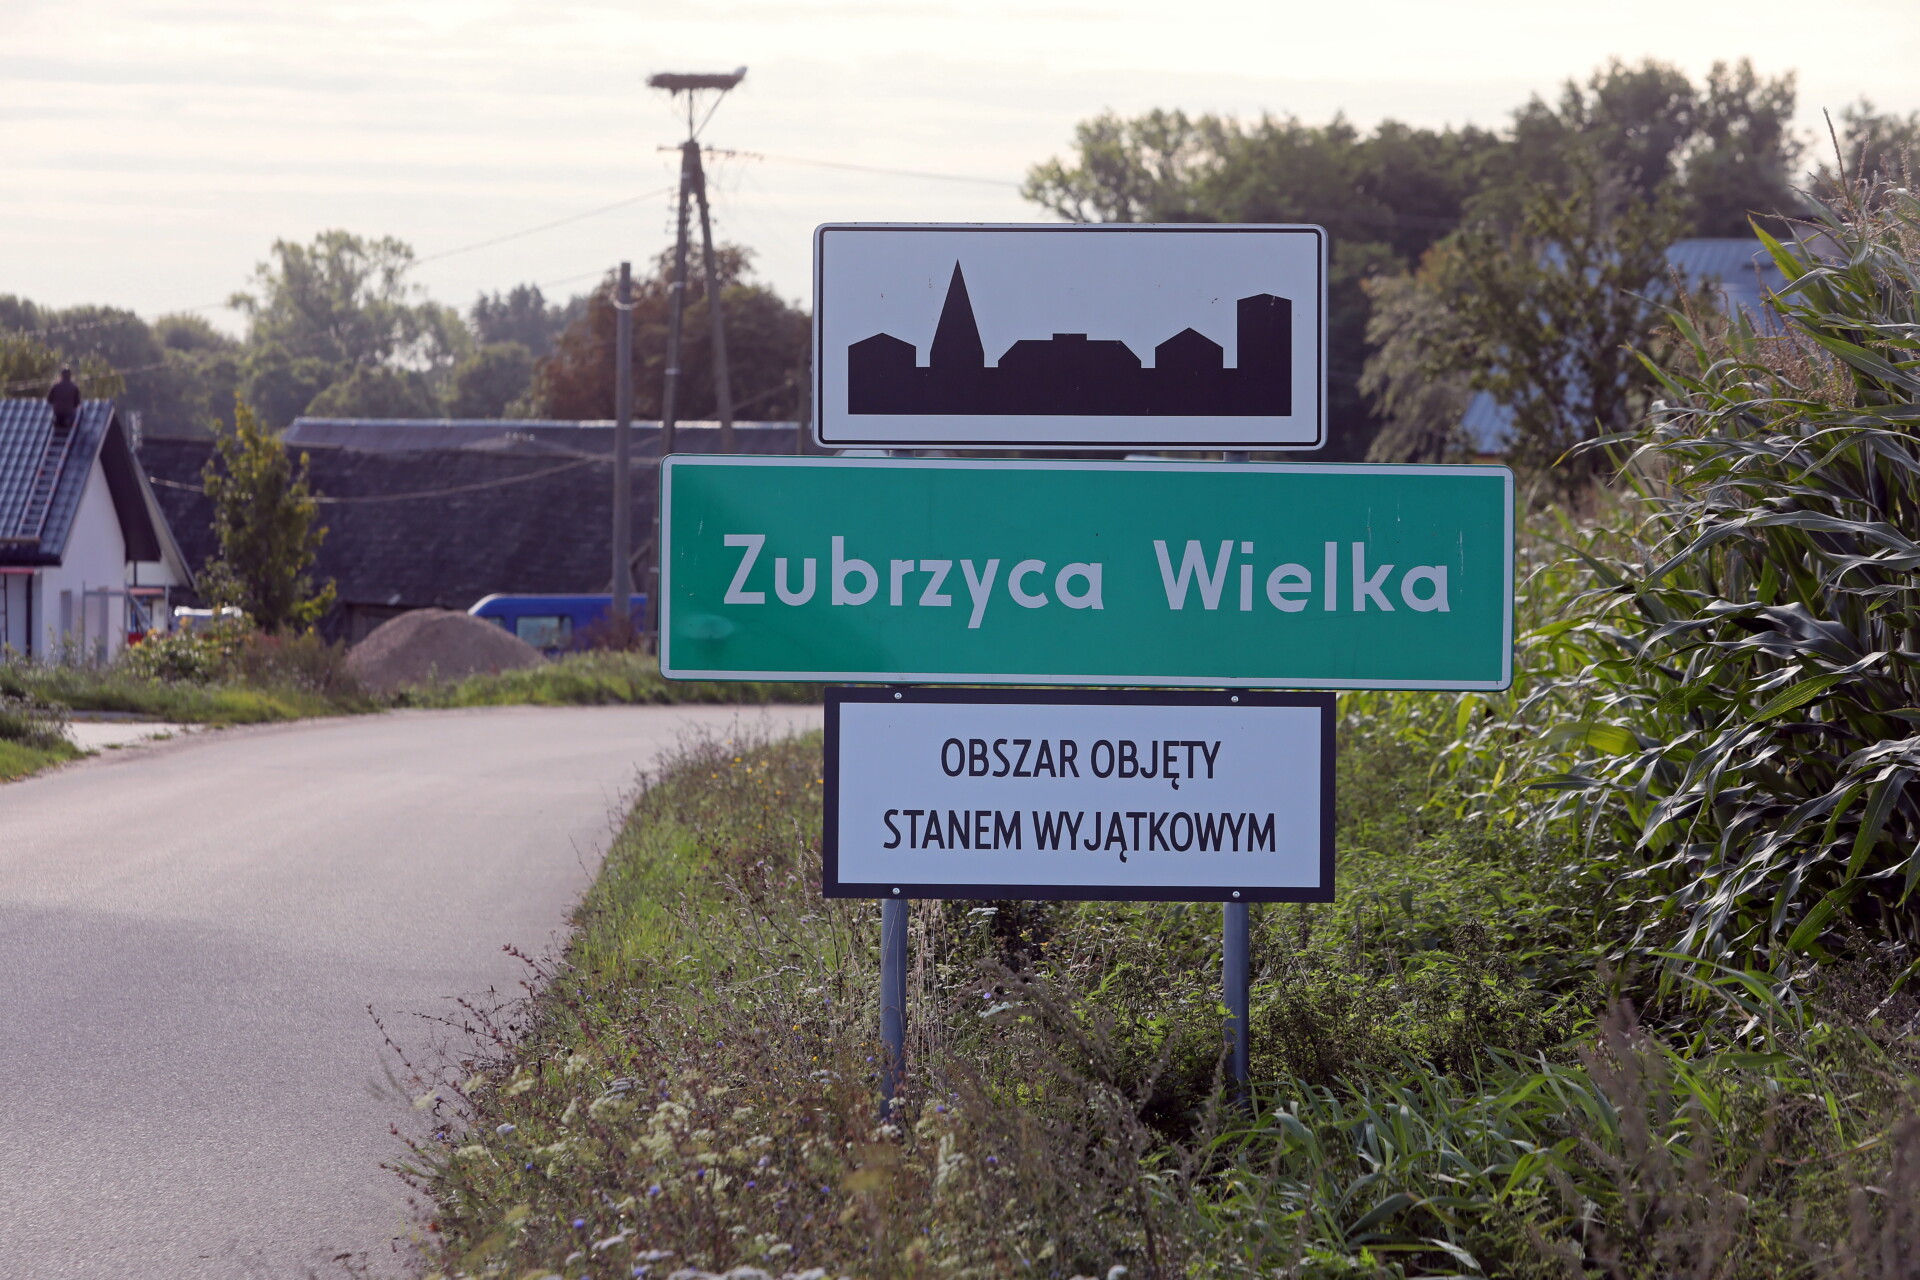 Σύνορα Πολωνίας - Λευκορωσίας © EPA/Artur Reszko POLAND OUT